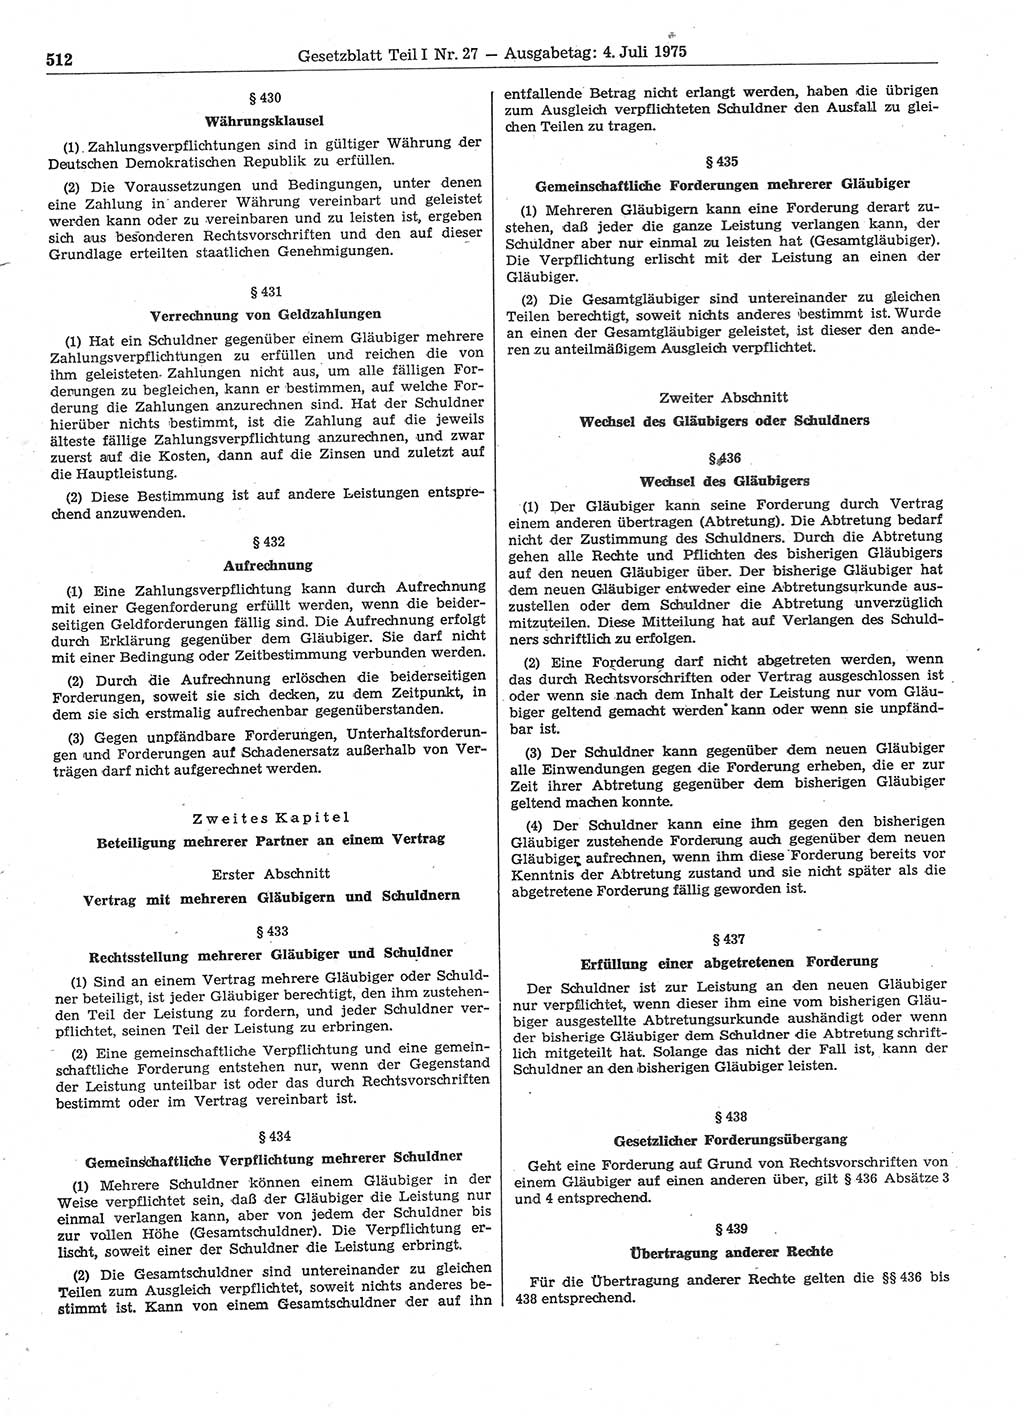 Gesetzblatt (GBl.) der Deutschen Demokratischen Republik (DDR) Teil Ⅰ 1975, Seite 512 (GBl. DDR Ⅰ 1975, S. 512)